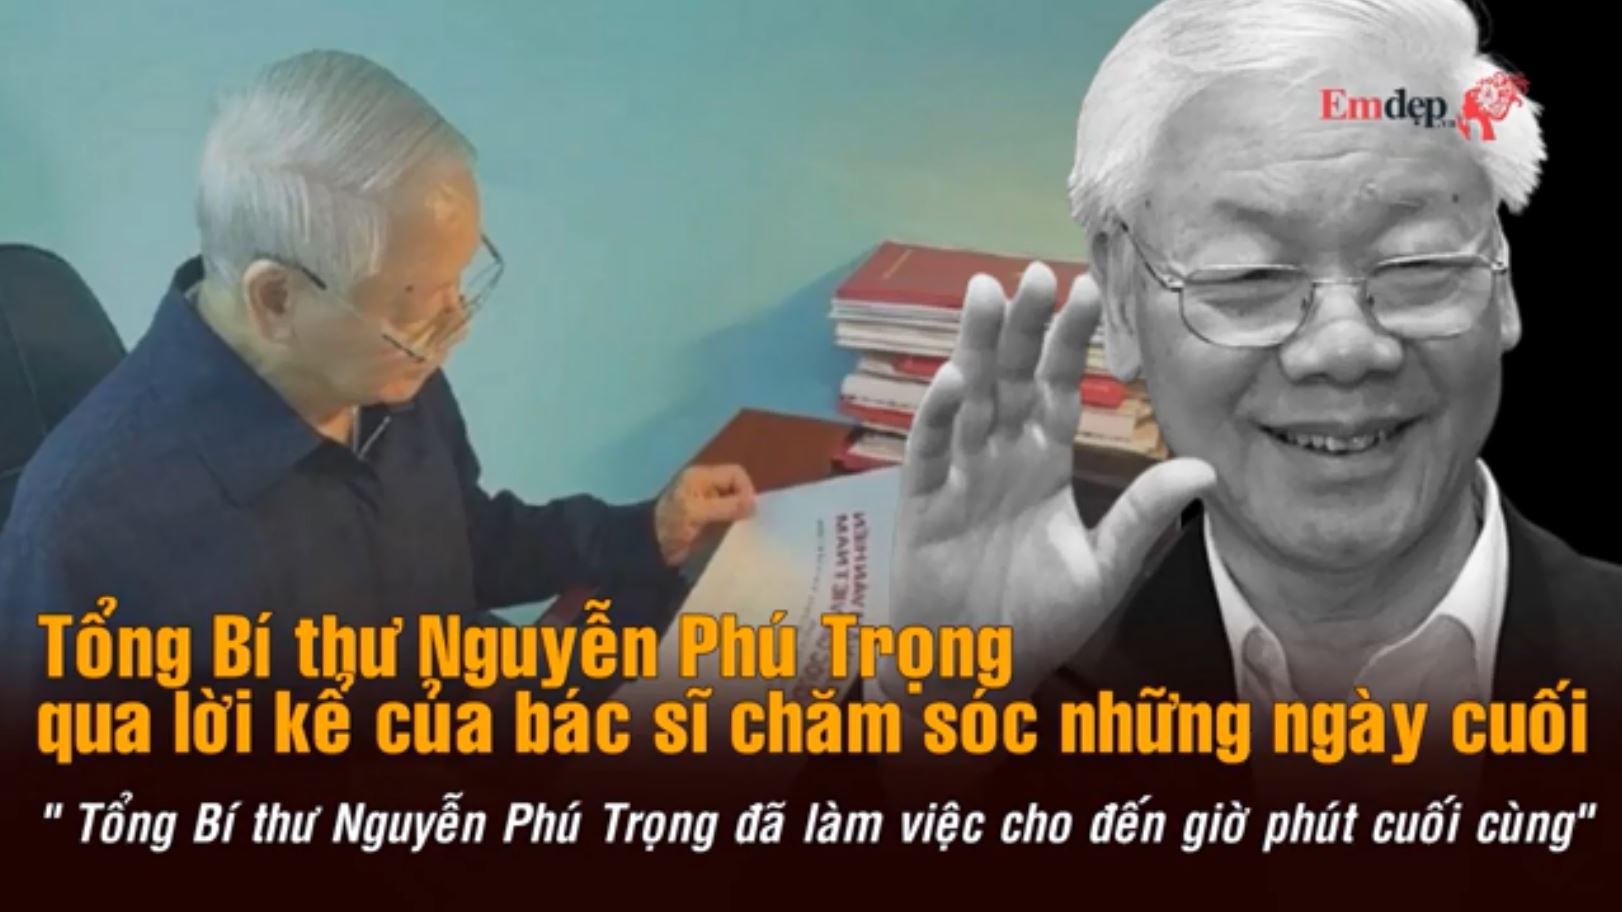 Bác sĩ chăm sóc sức khỏe: Tổng Bí thư Nguyễn Phú Trọng làm việc tới giờ phút cuối cùng